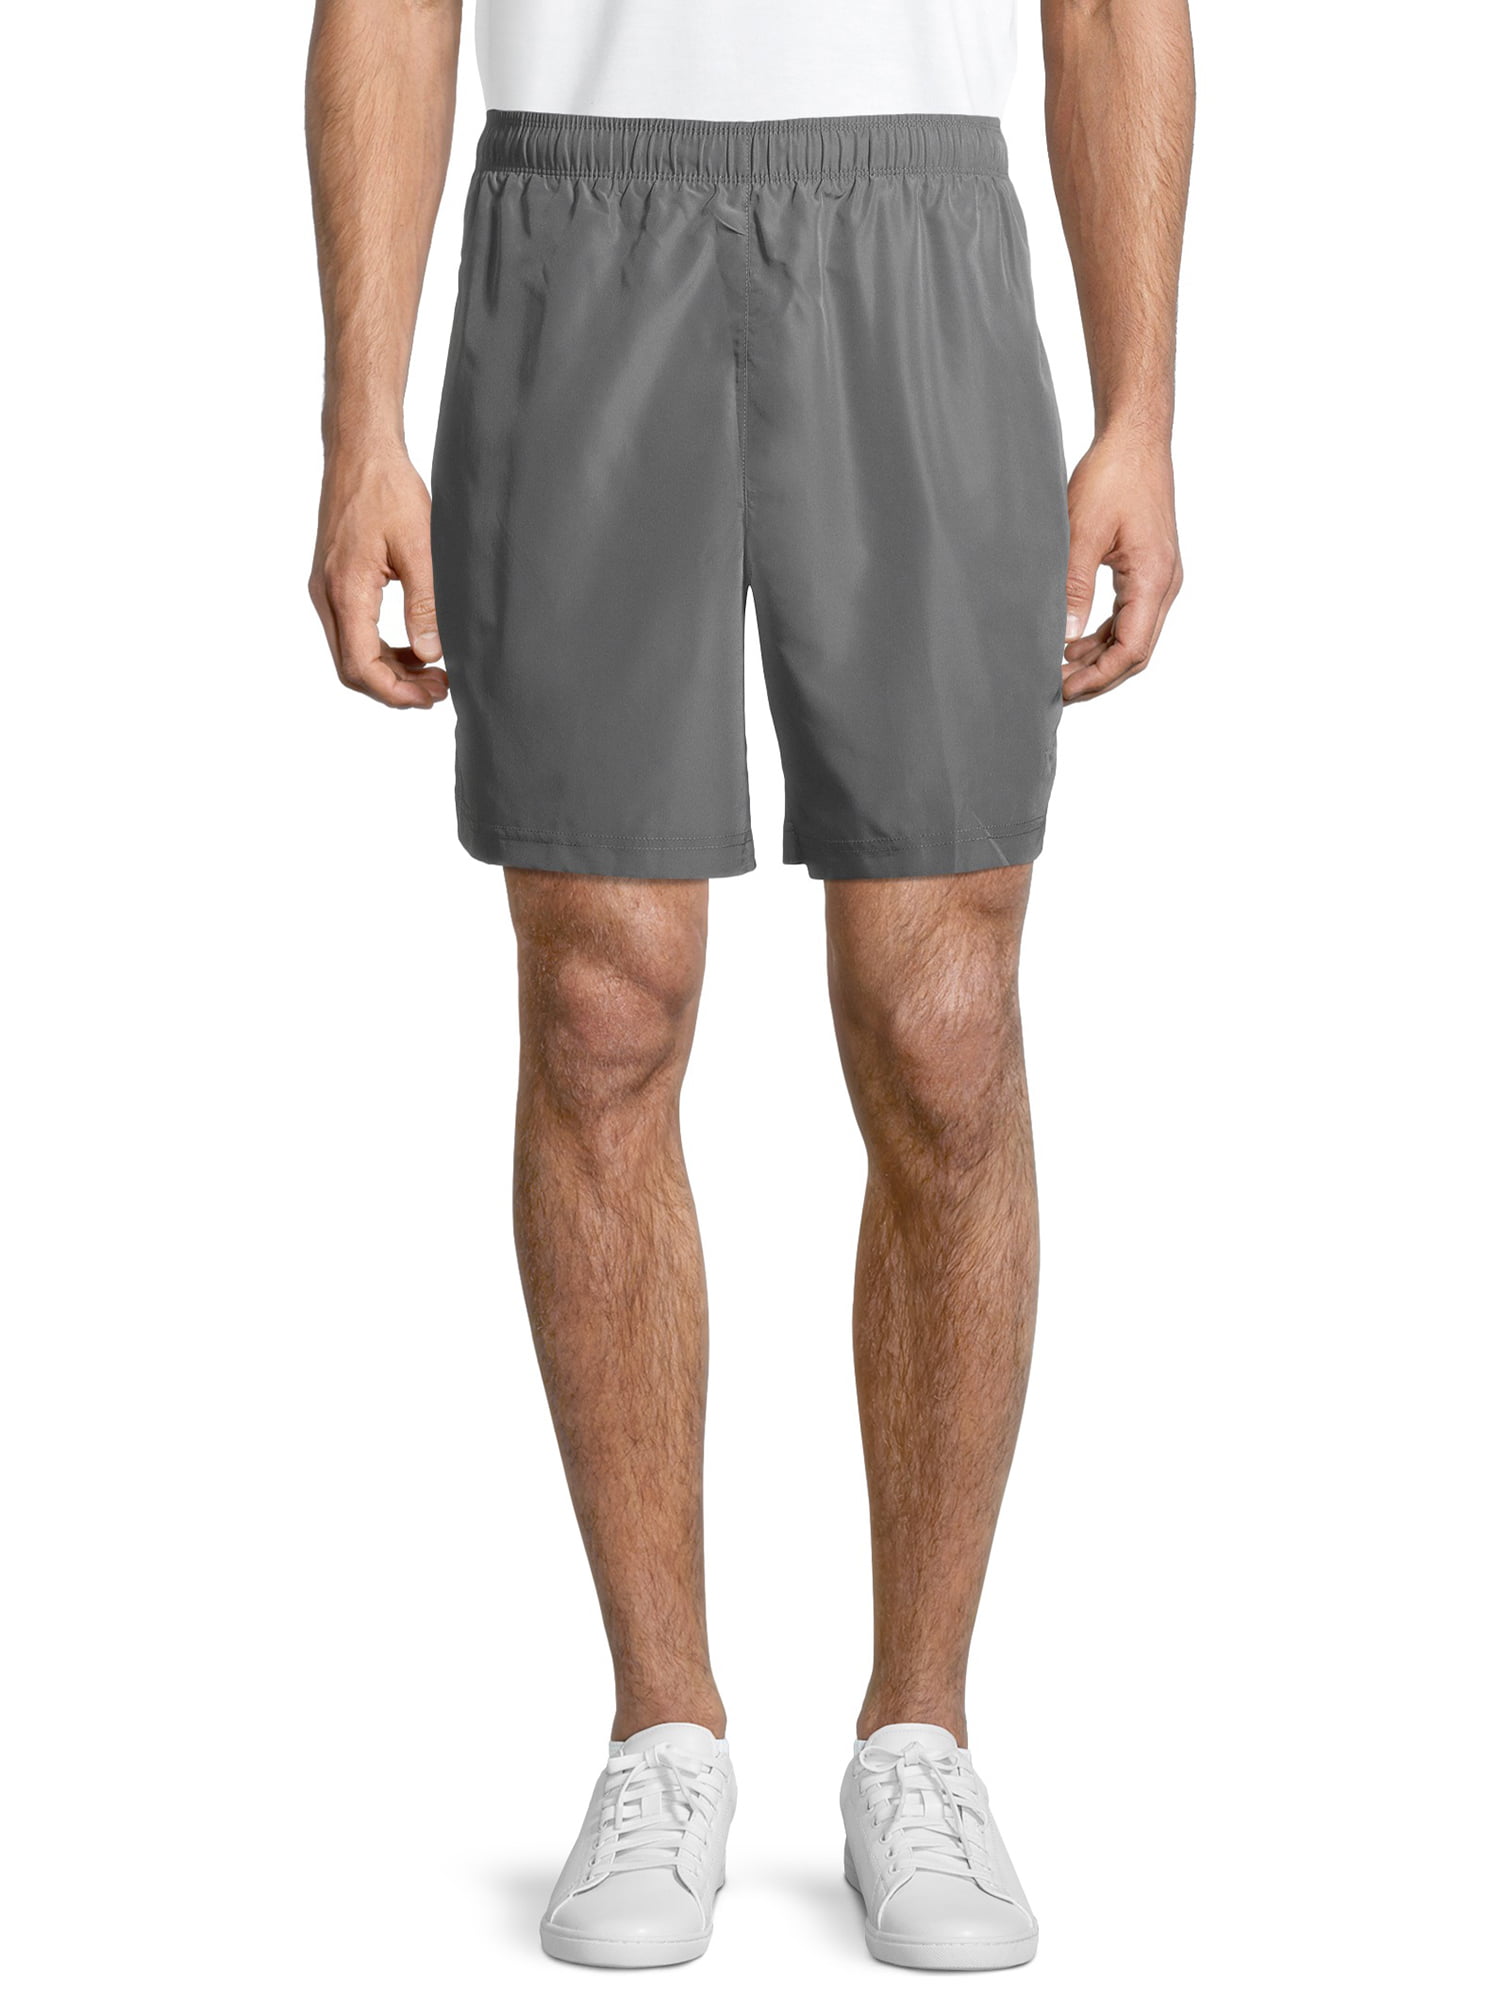 Cheetah Men's Standard Woven Basketball Shorts - Walmart.com